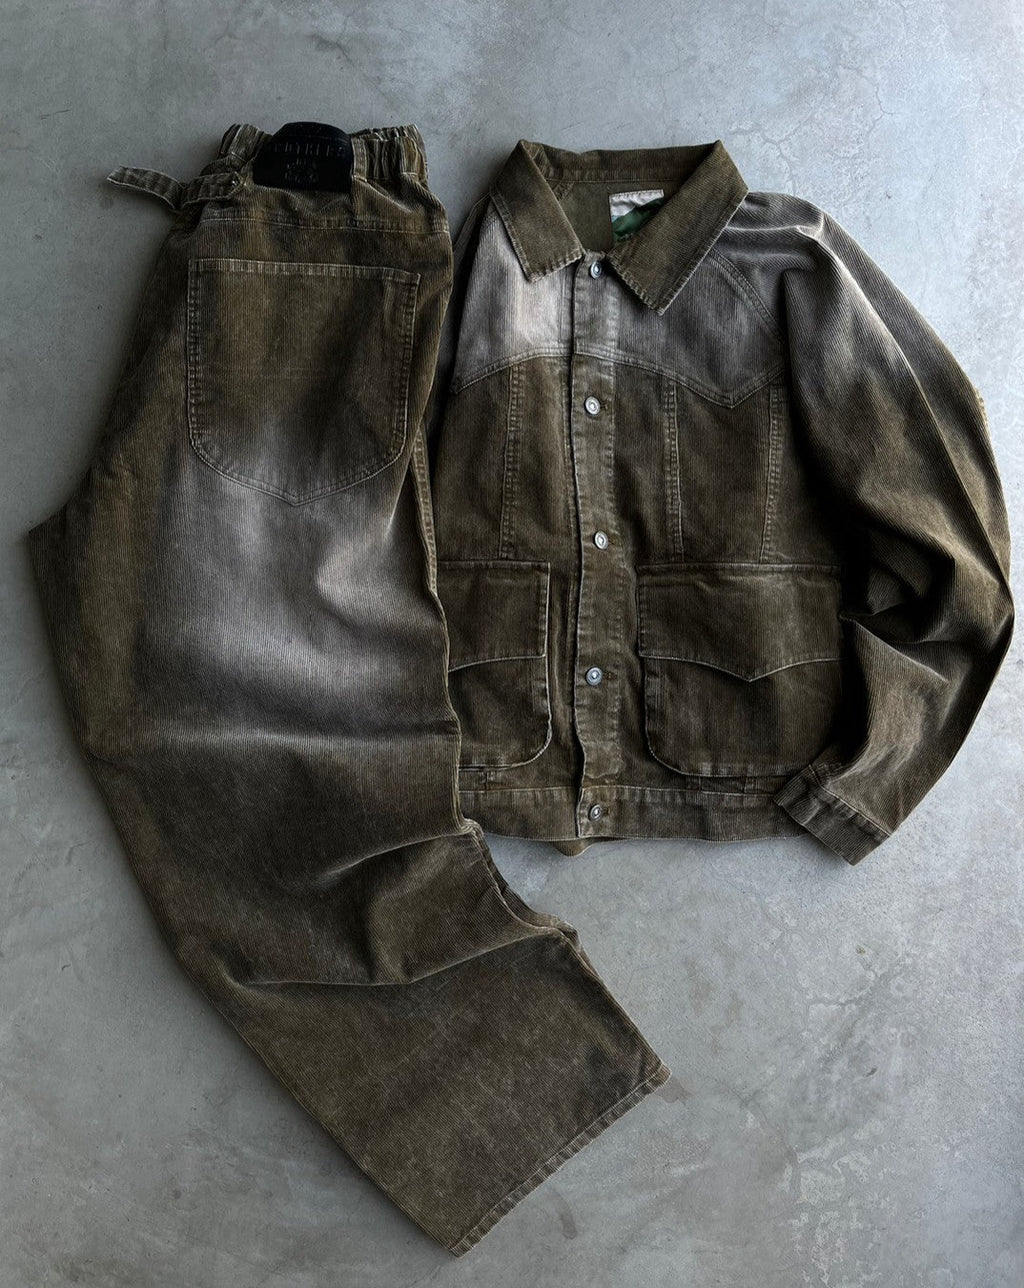 Western corduroy military jacket – YZ